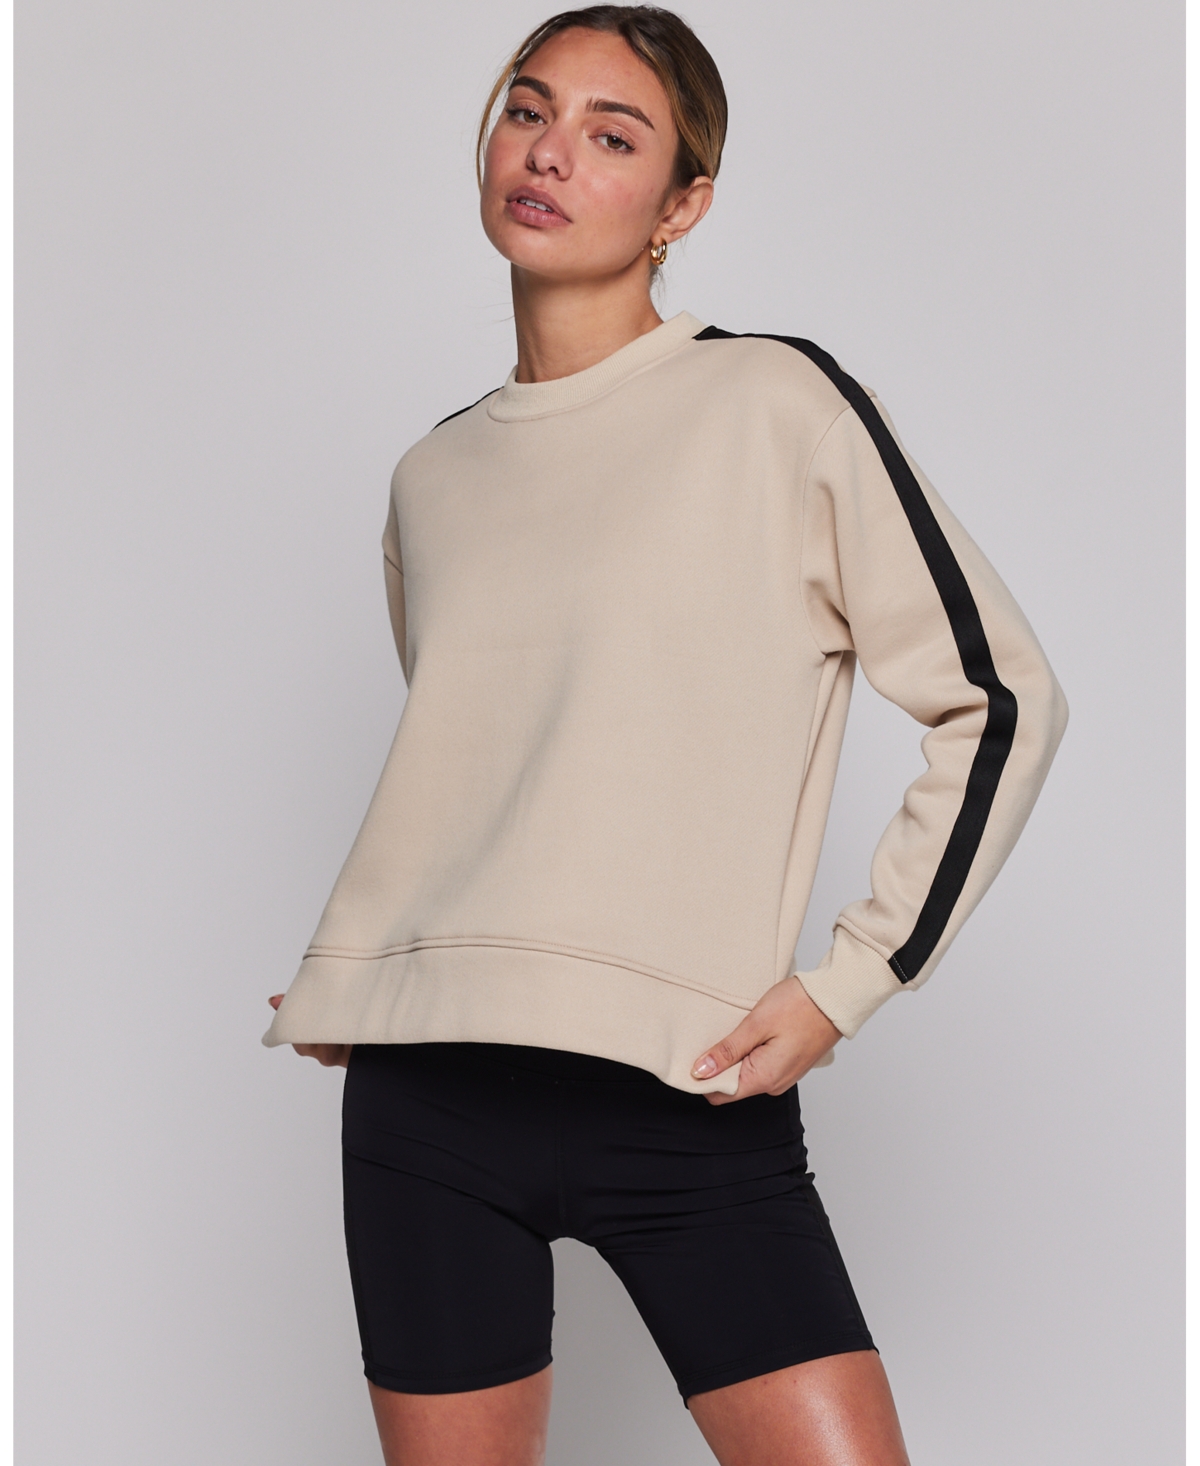 Sideline Fleece Sweatshirt for Women - Matcha/bone